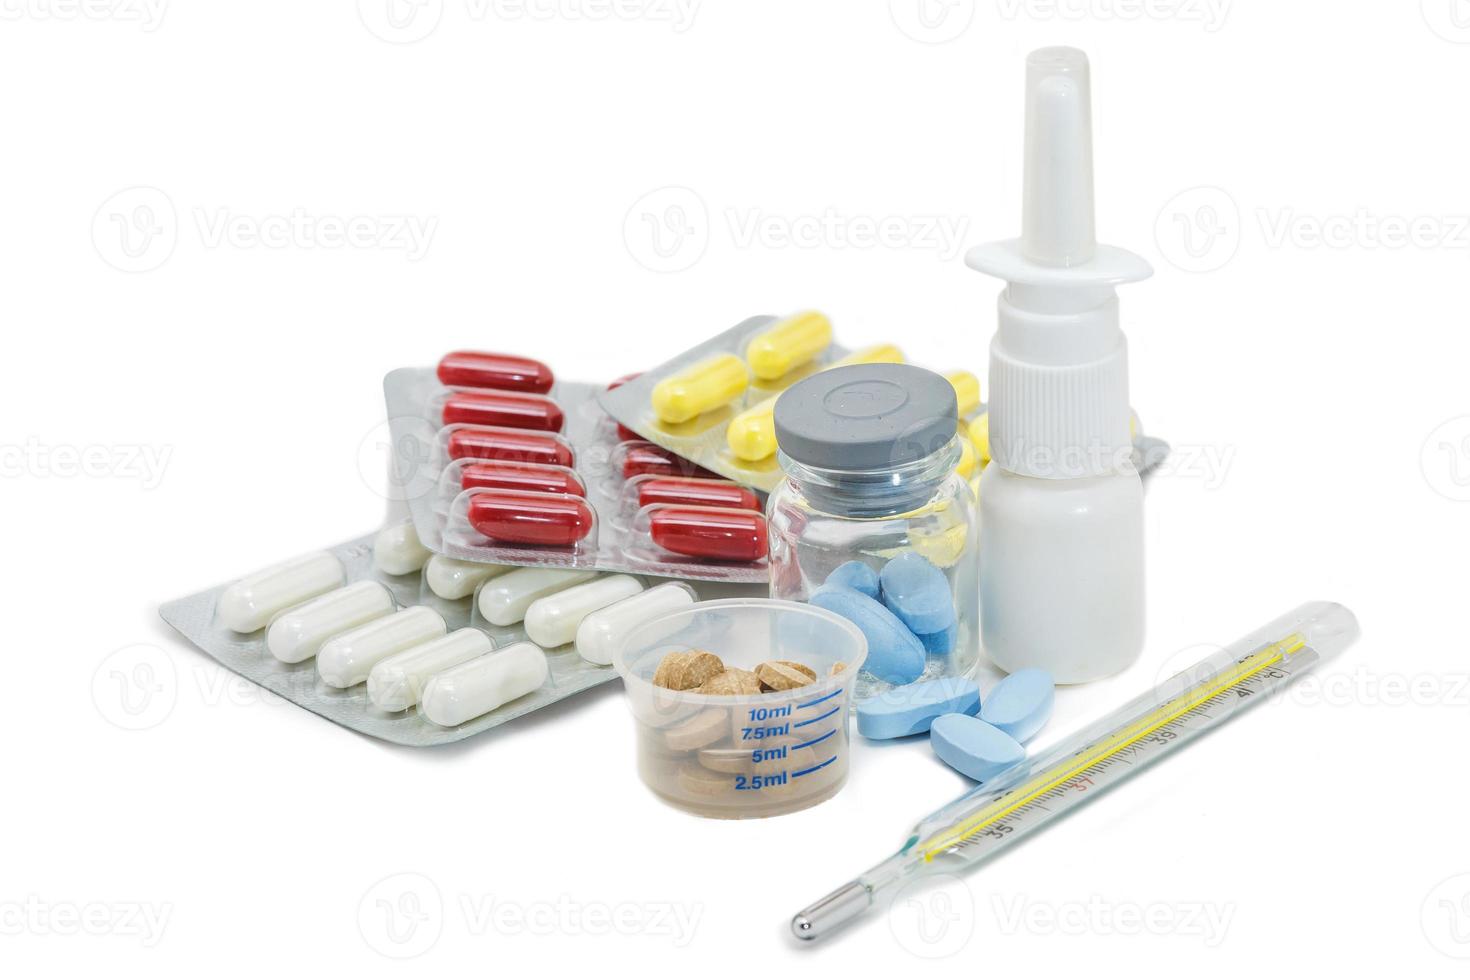 pil verpakking en medische benodigdheden neusspray kwik termometer op witte achtergrond foto